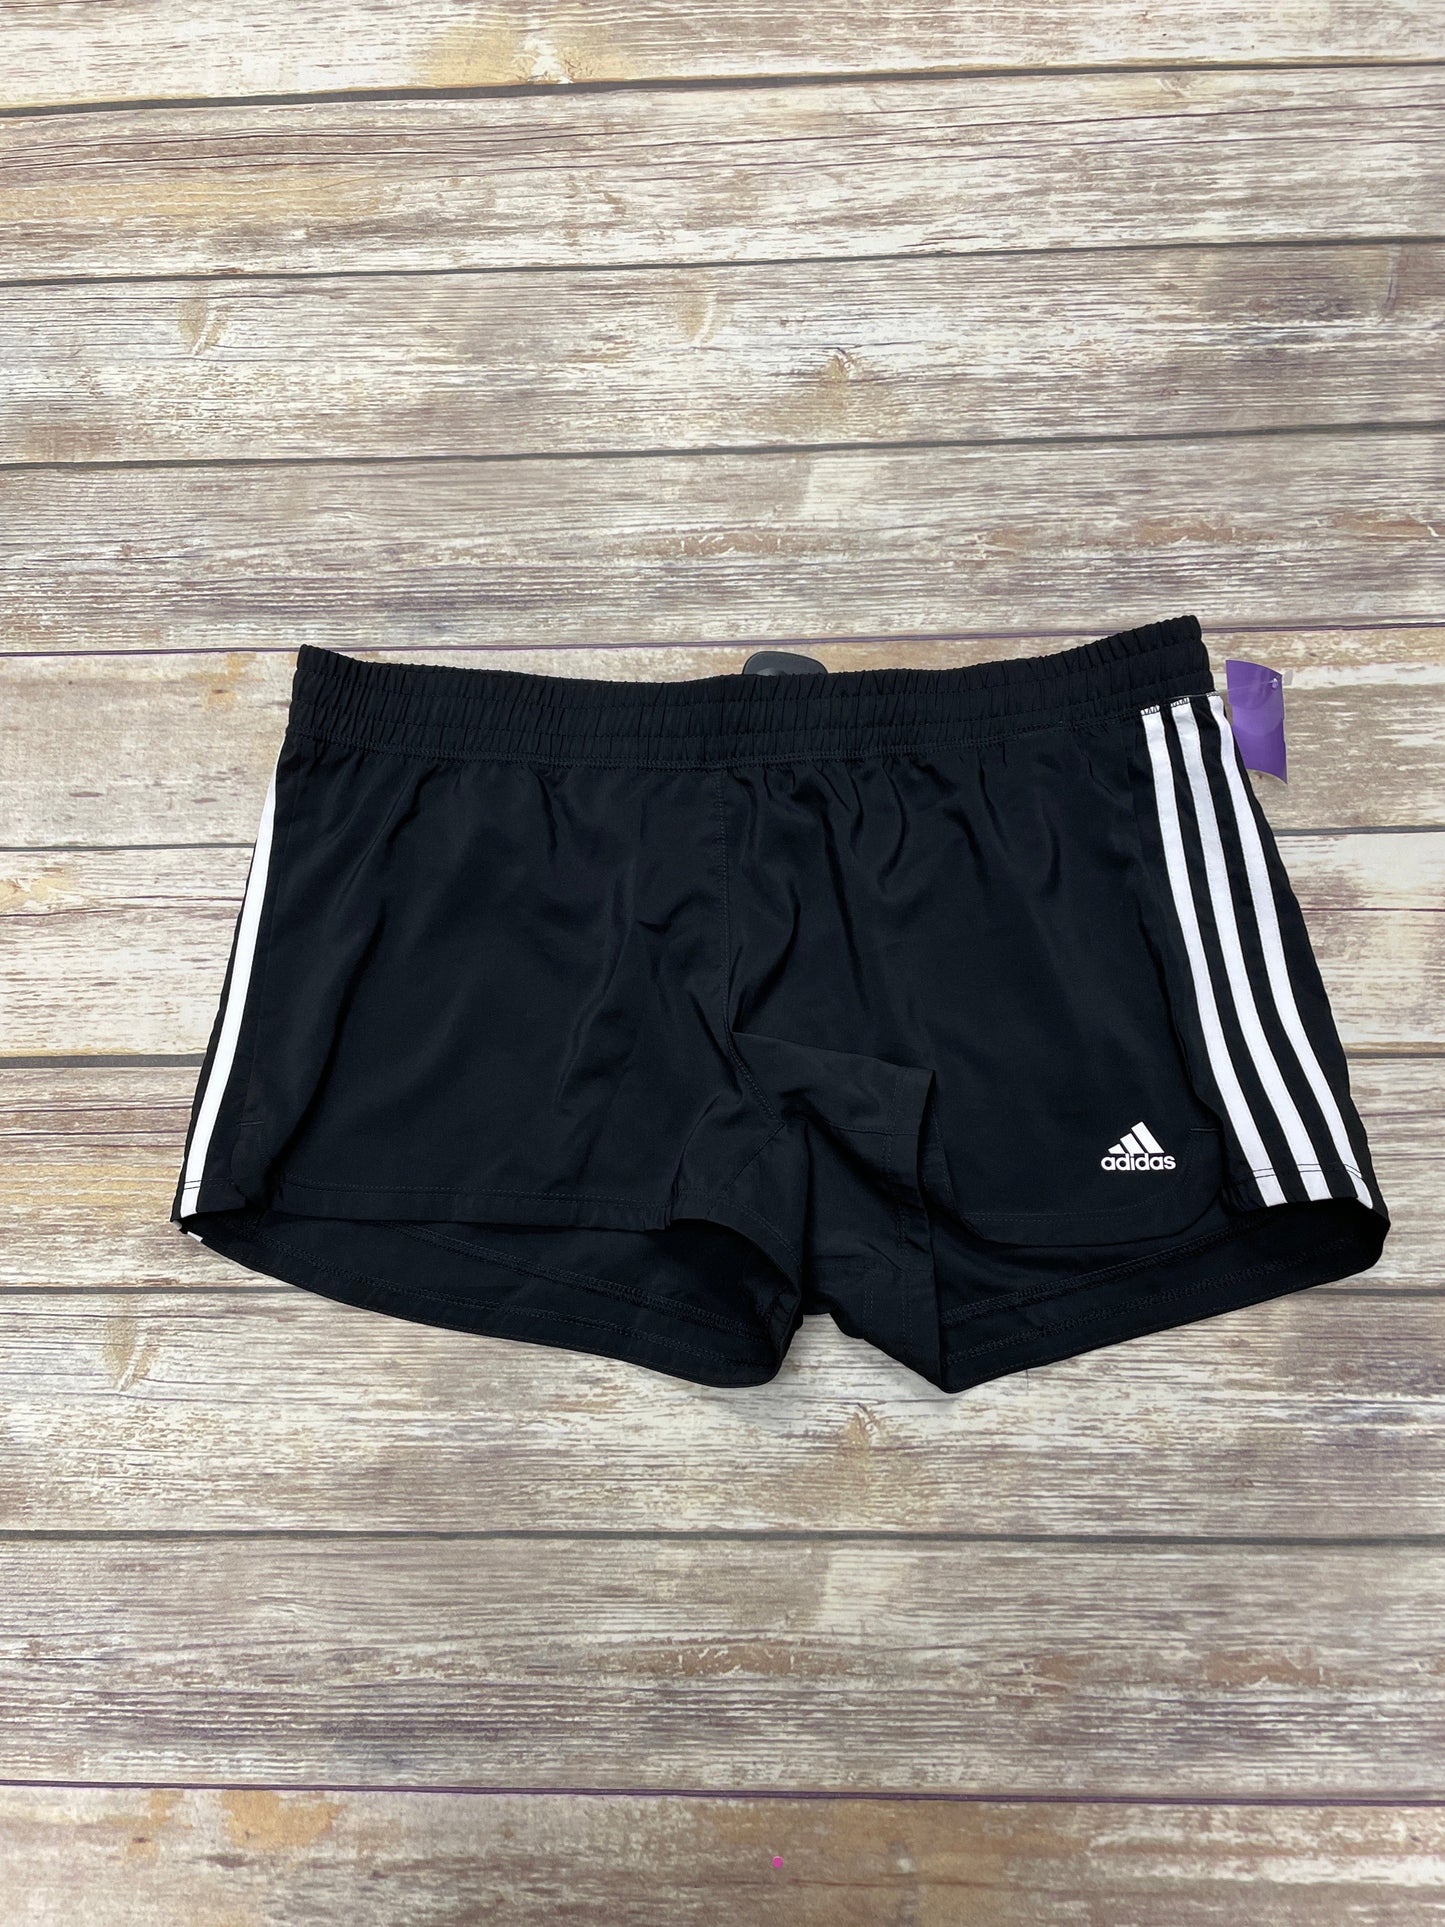 Black & White Athletic Shorts Adidas, Size Xl